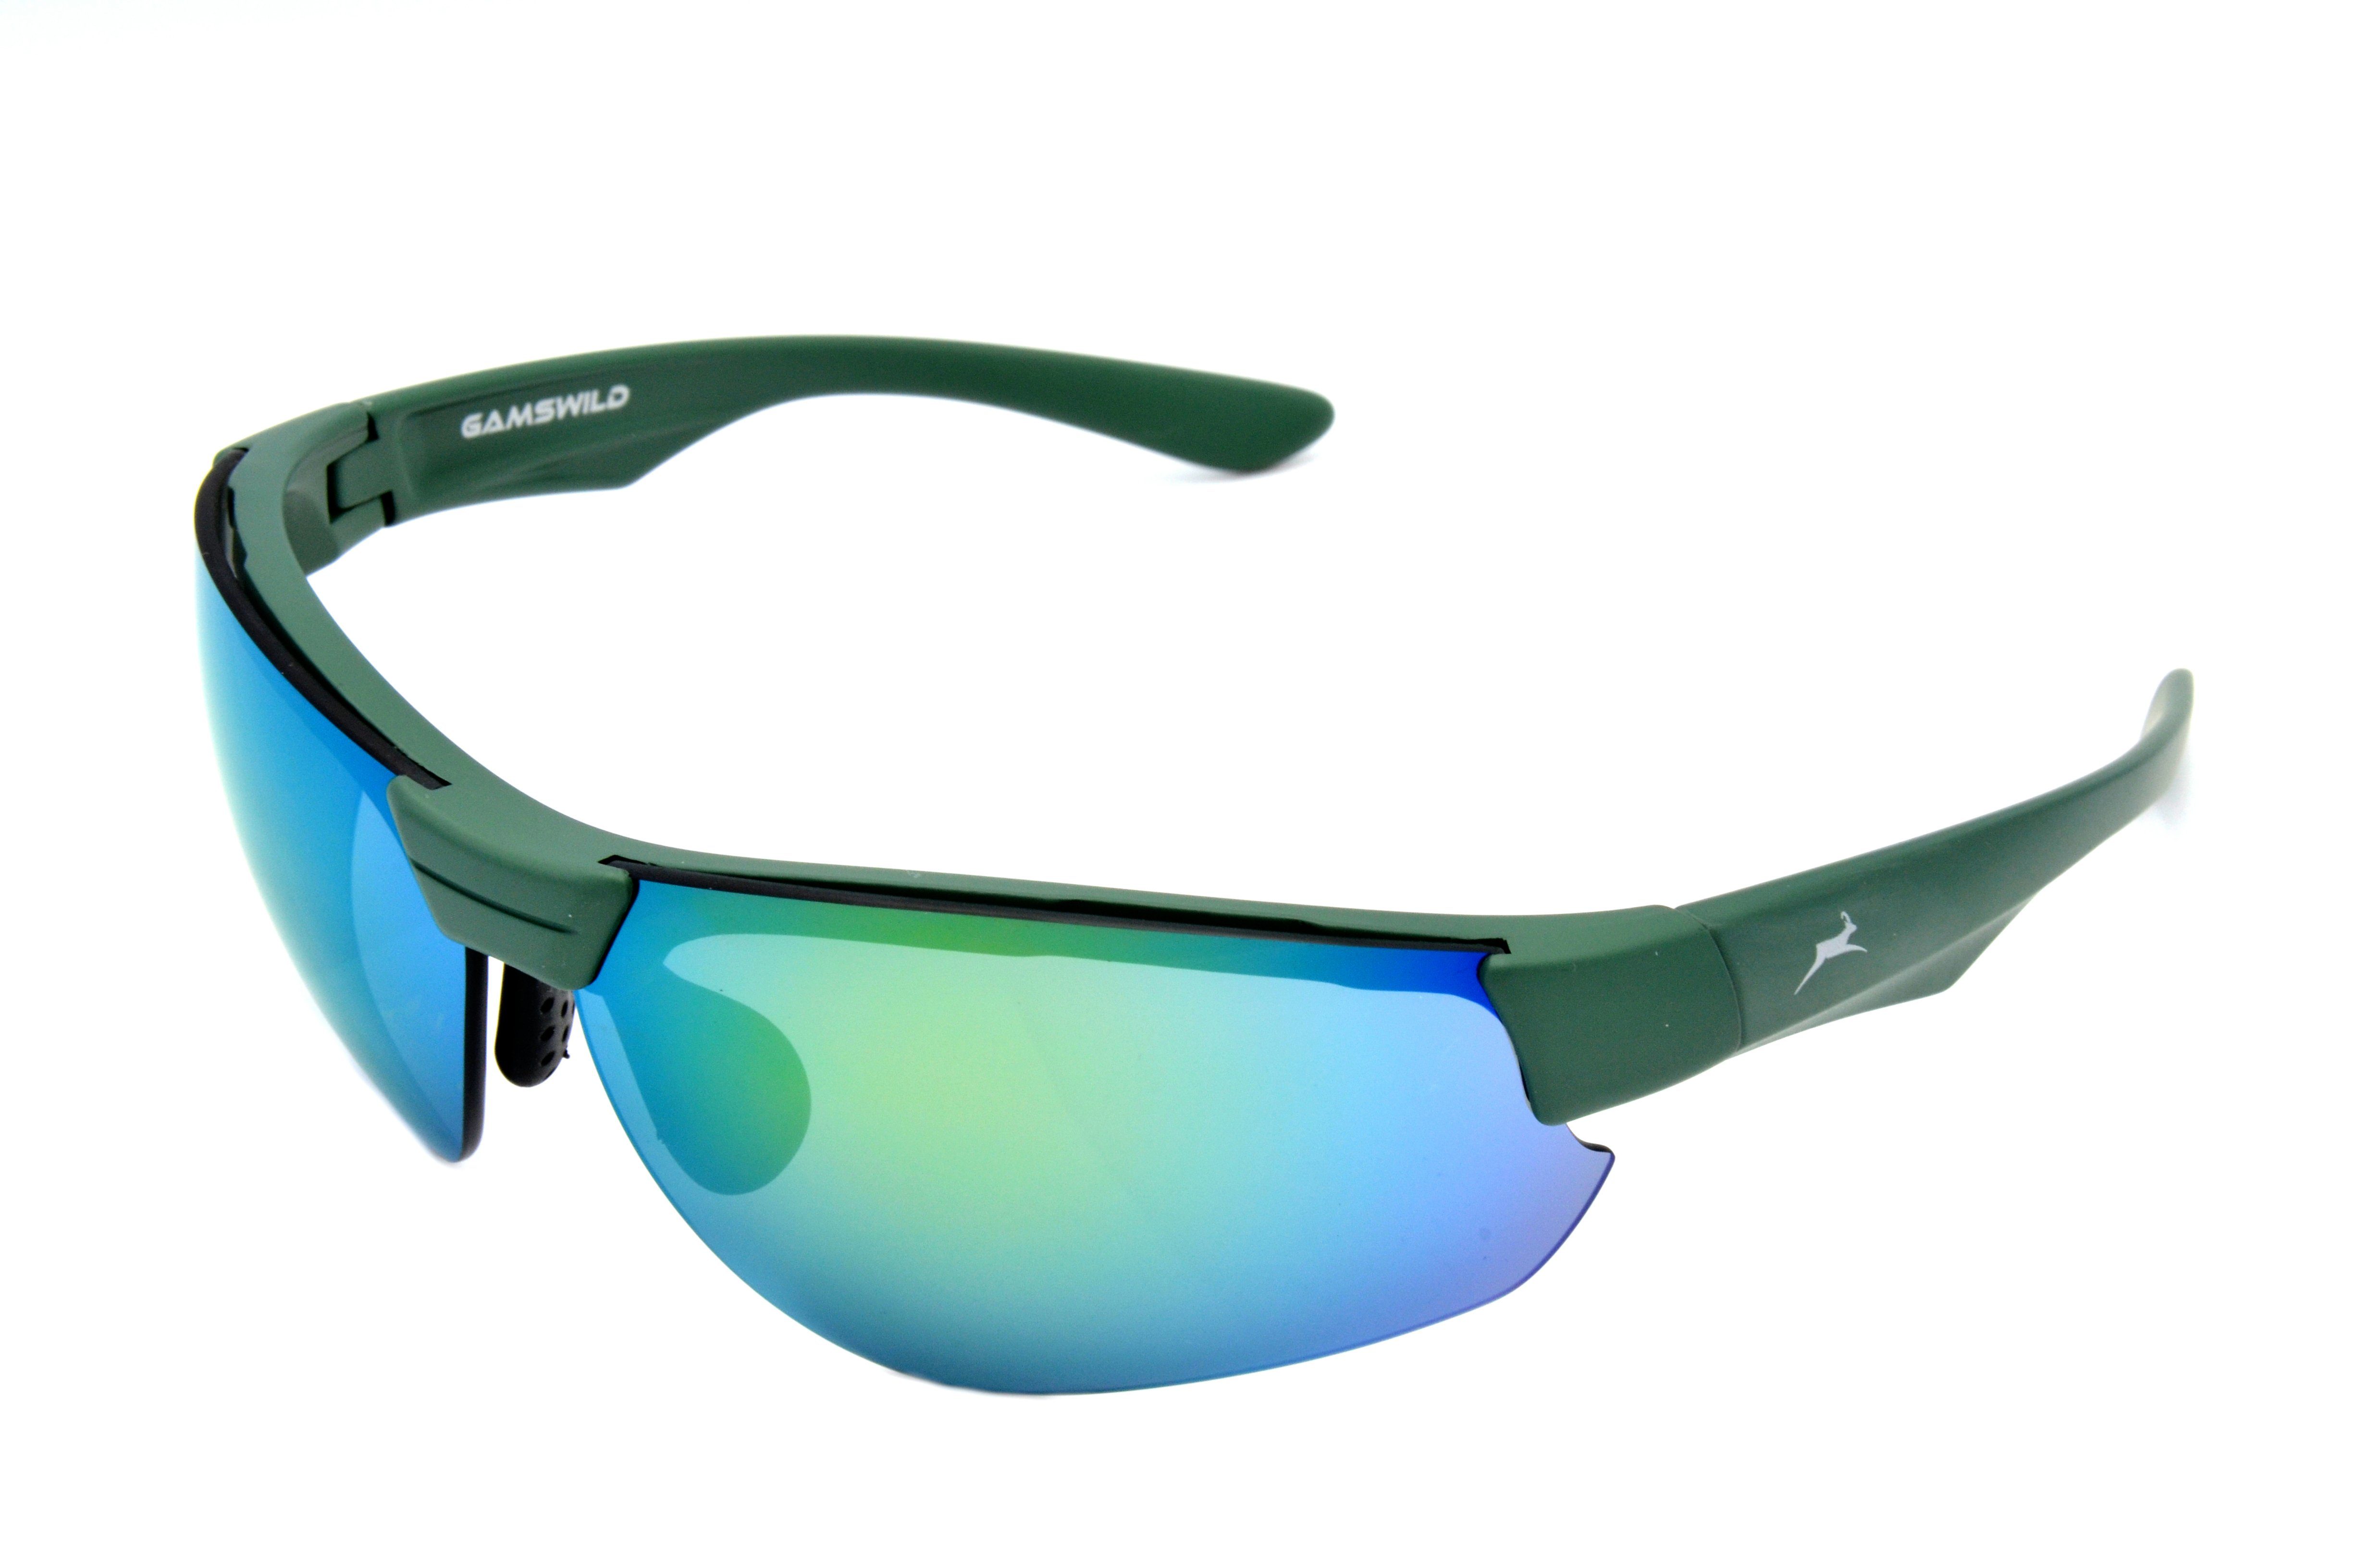 Herren weiß, Halbrahmenbrille Damen Skibrille Sonnenbrille blau, grün, Unisex, Sportbrille WS3032 Gamswild Fahrradbrille